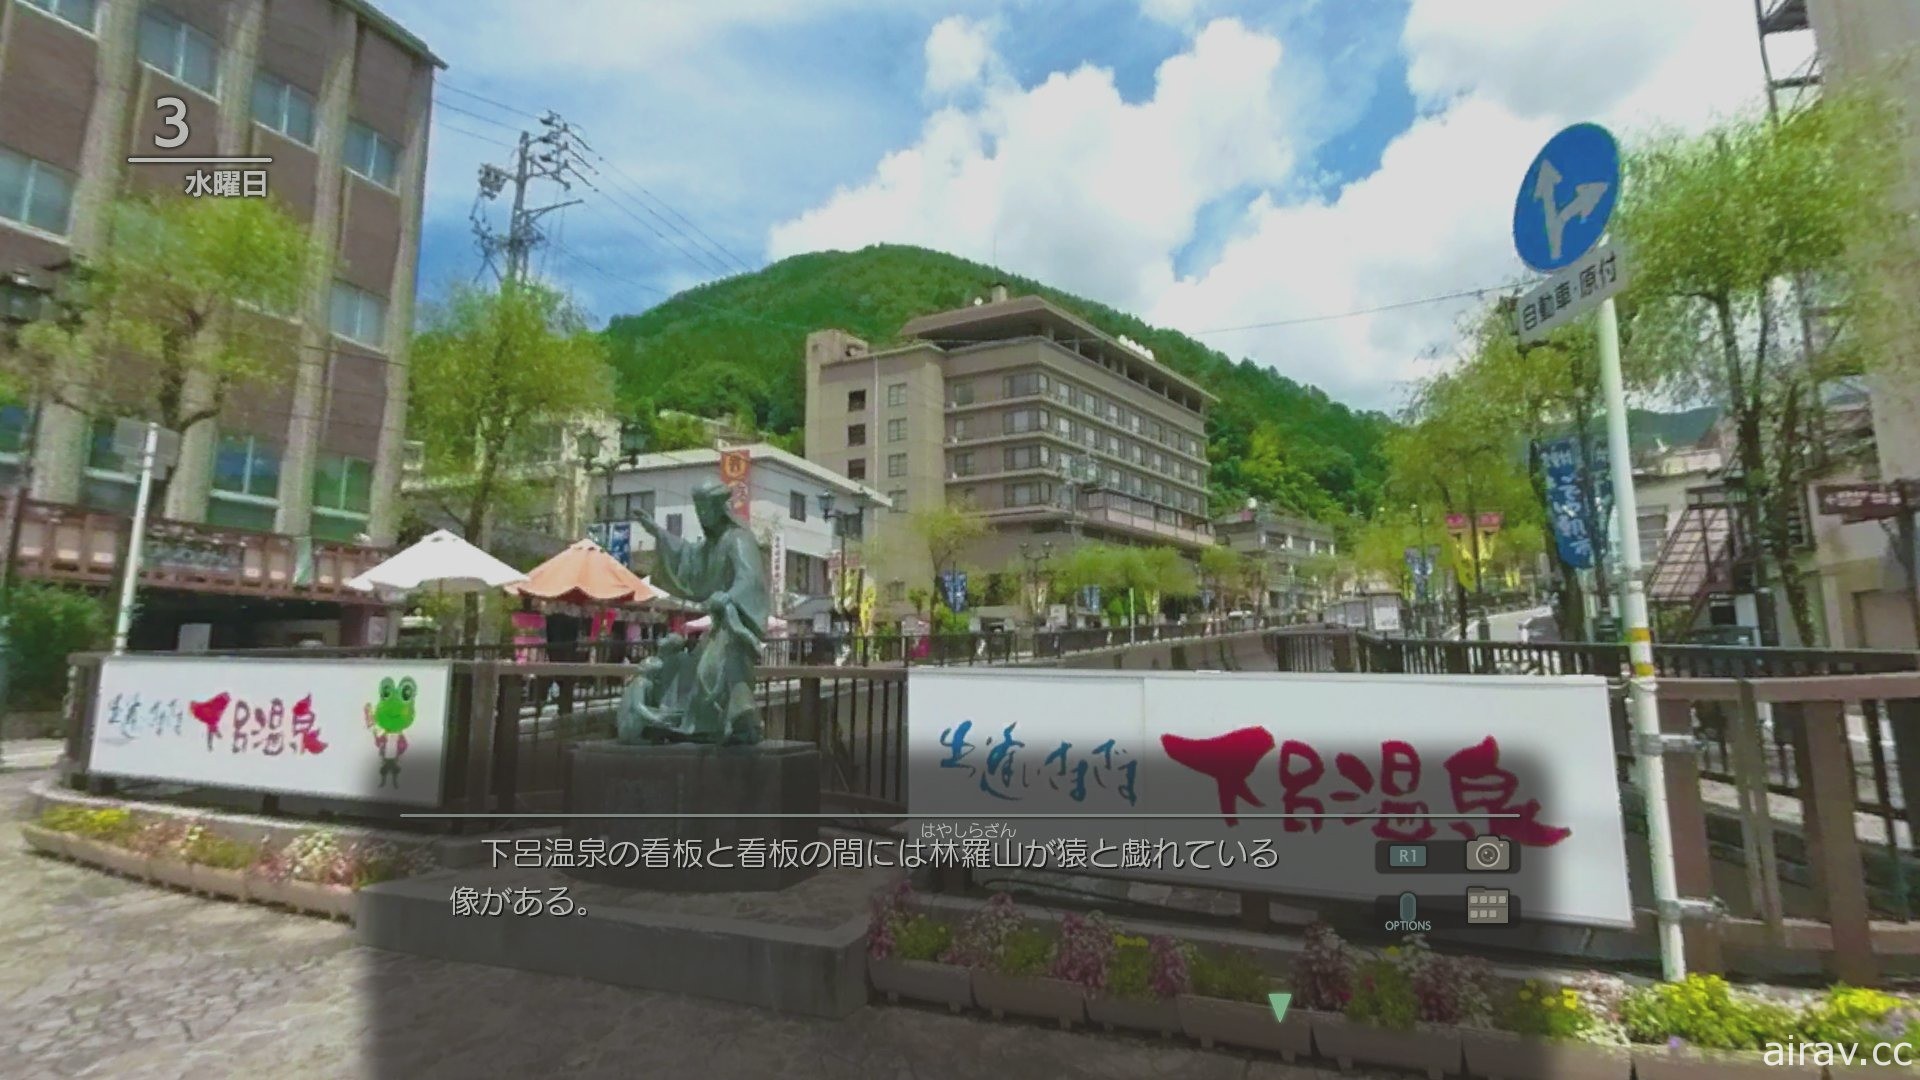 【试玩】《风雨来记 4》透过 360 度环景呈现骑乘光景 体验 “日本中心” 岐阜的魅力